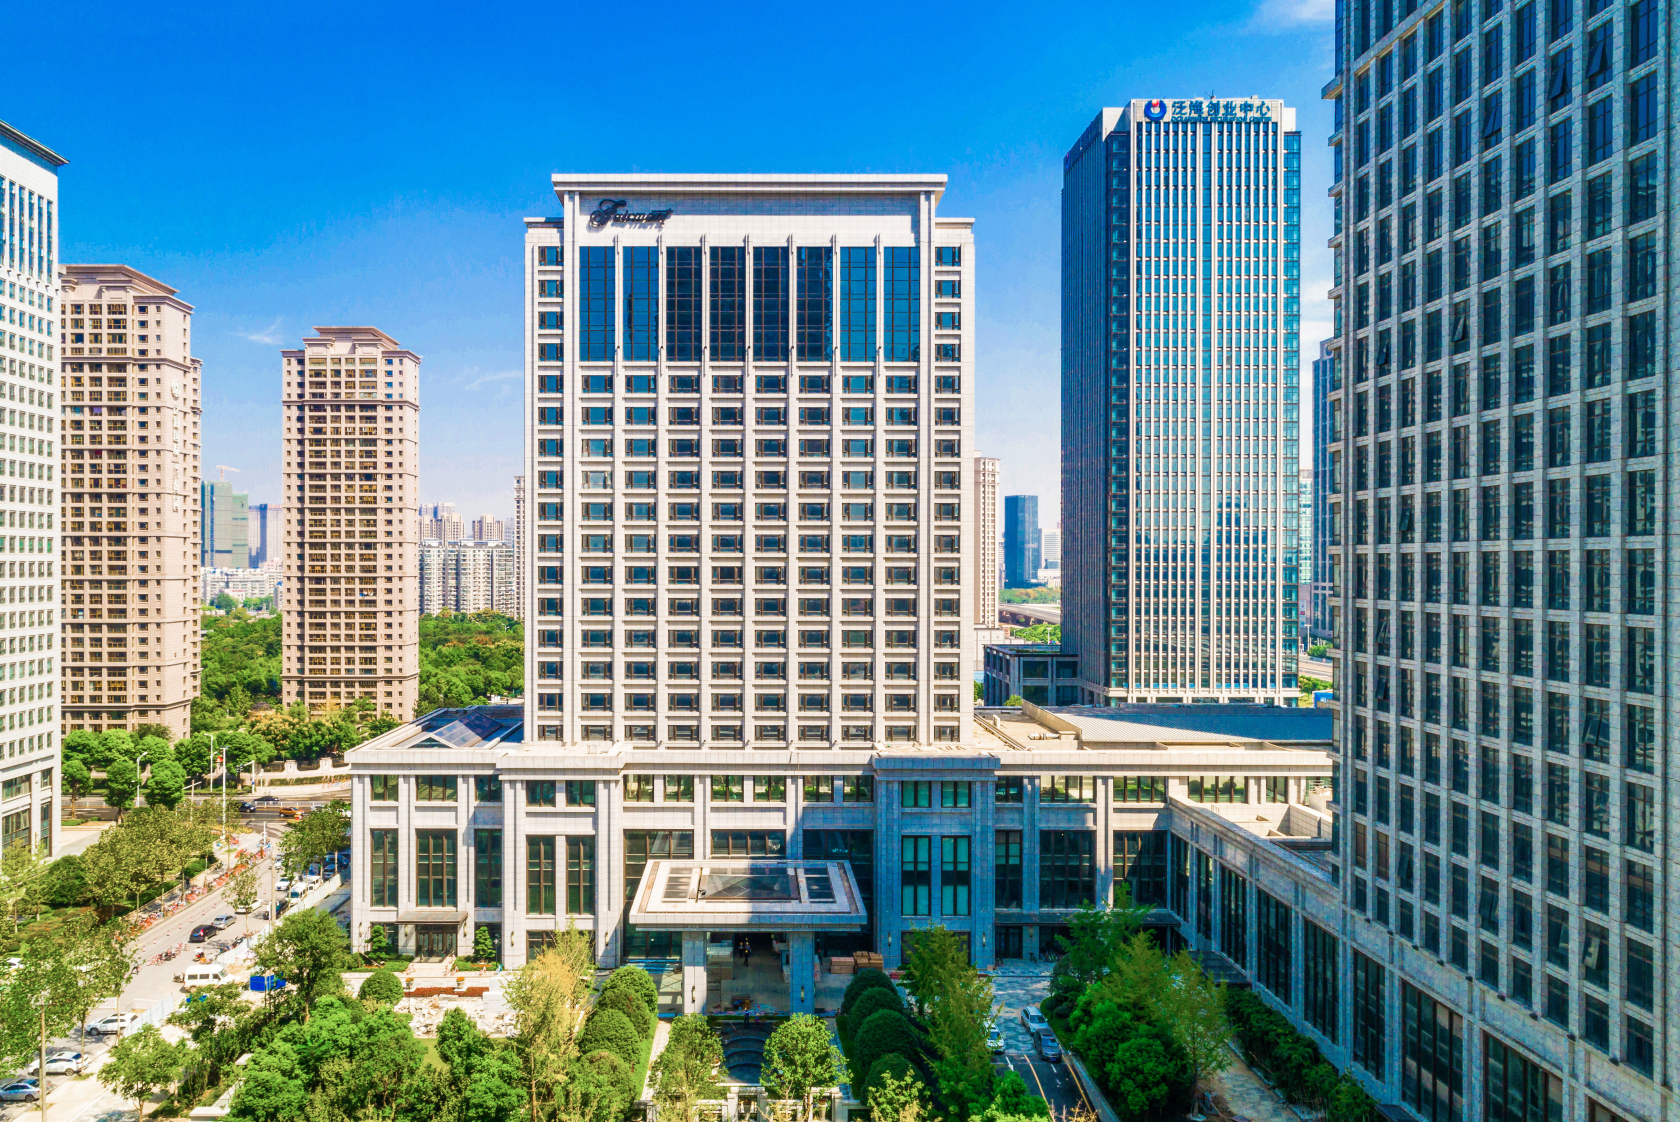 费尔蒙酒店即将入驻武汉，全新定义会奖旅游奢华品味